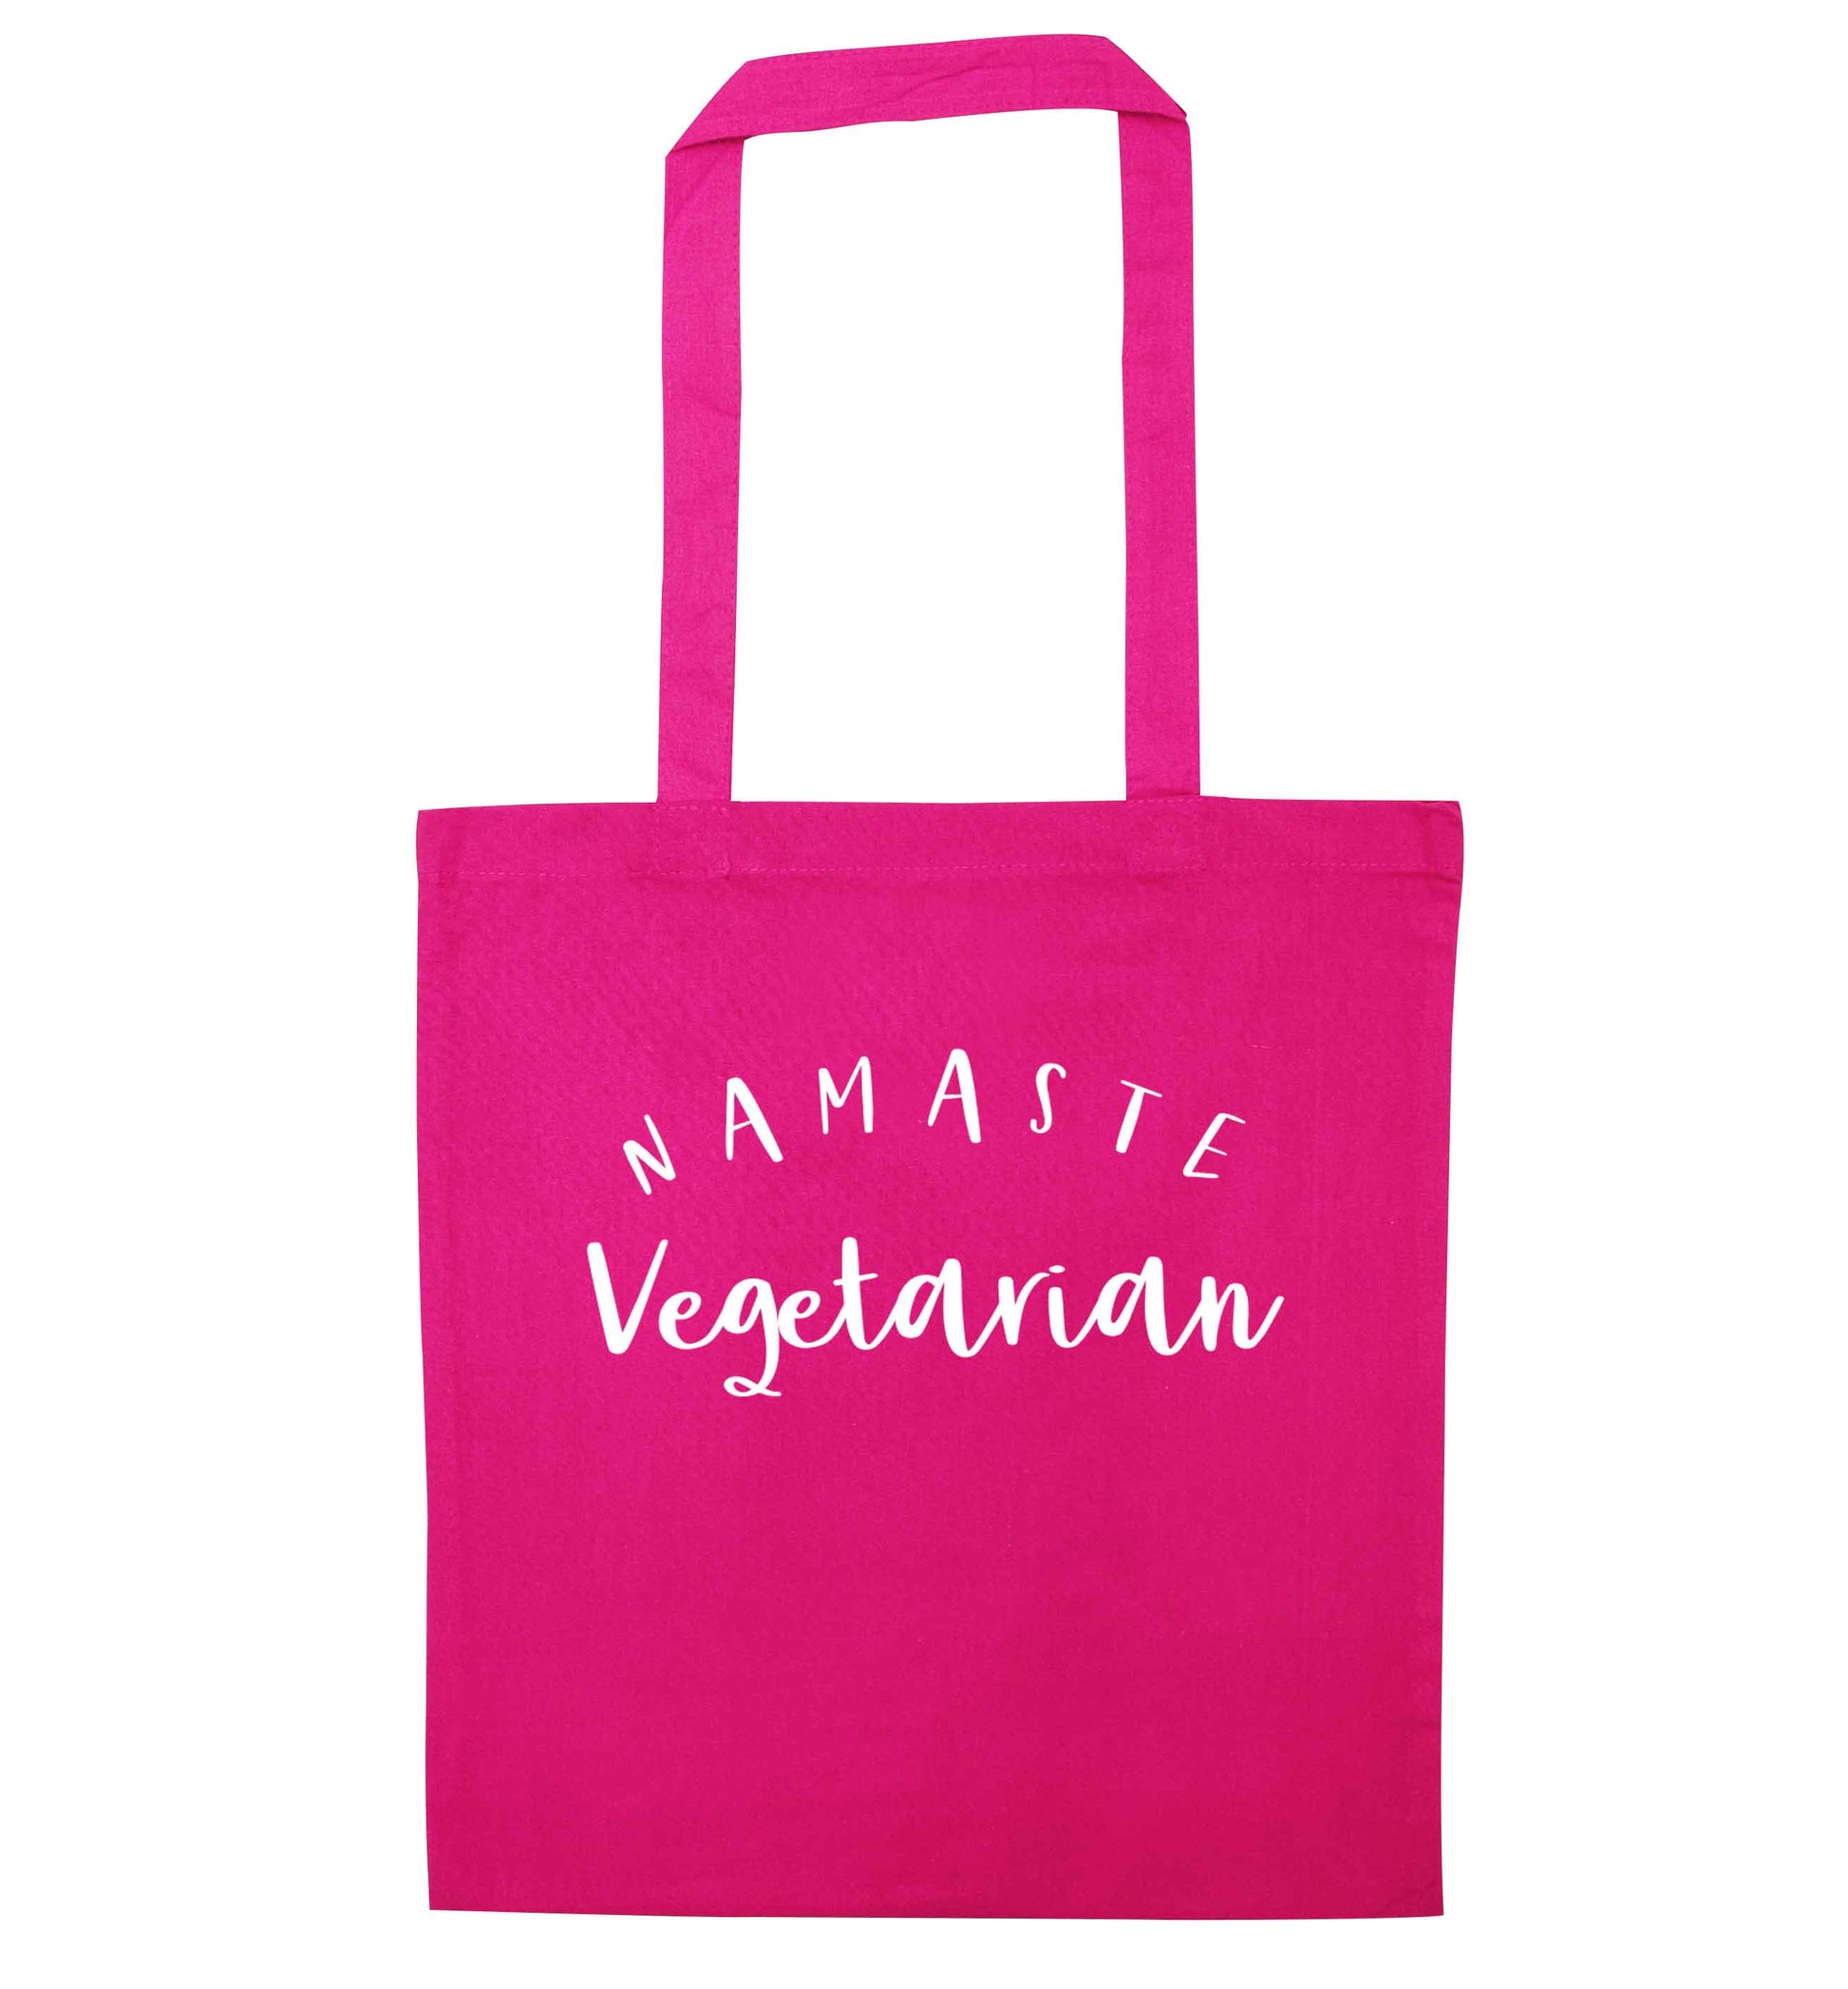 Namaste vegetarian pink tote bag